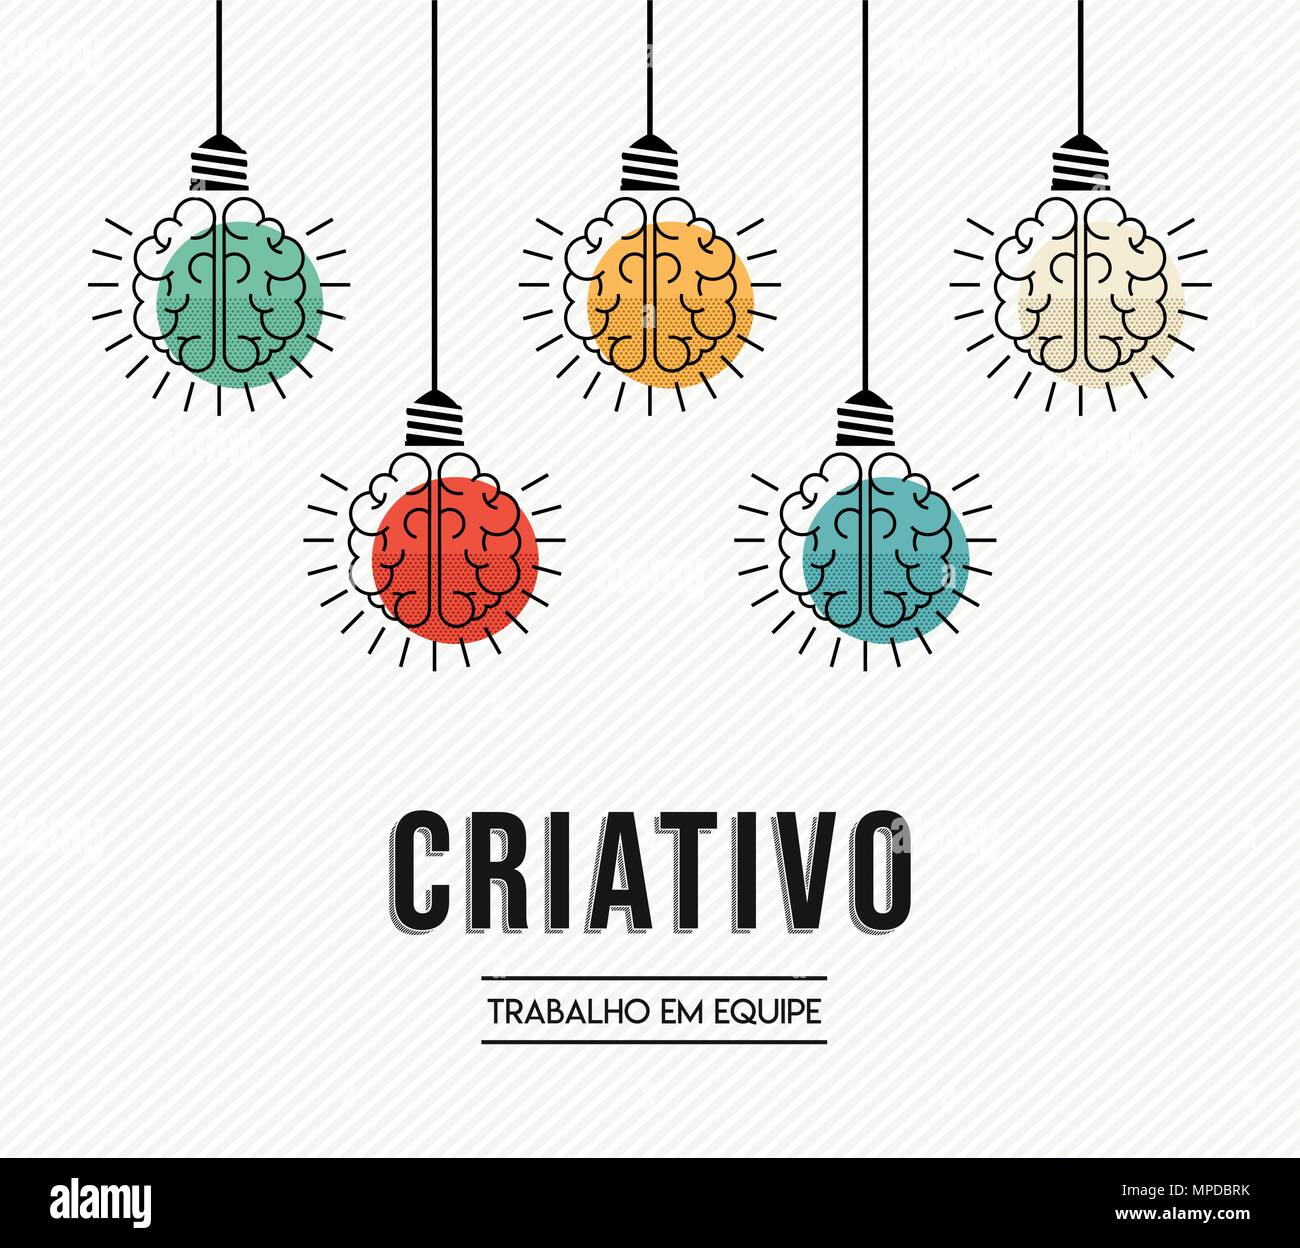 Lavoro di squadra creative design moderno in lingua portoghese con il cervello umano come colorata luce lampada, la creatività imprenditoriale concetto. EPS10 vettore. Illustrazione Vettoriale